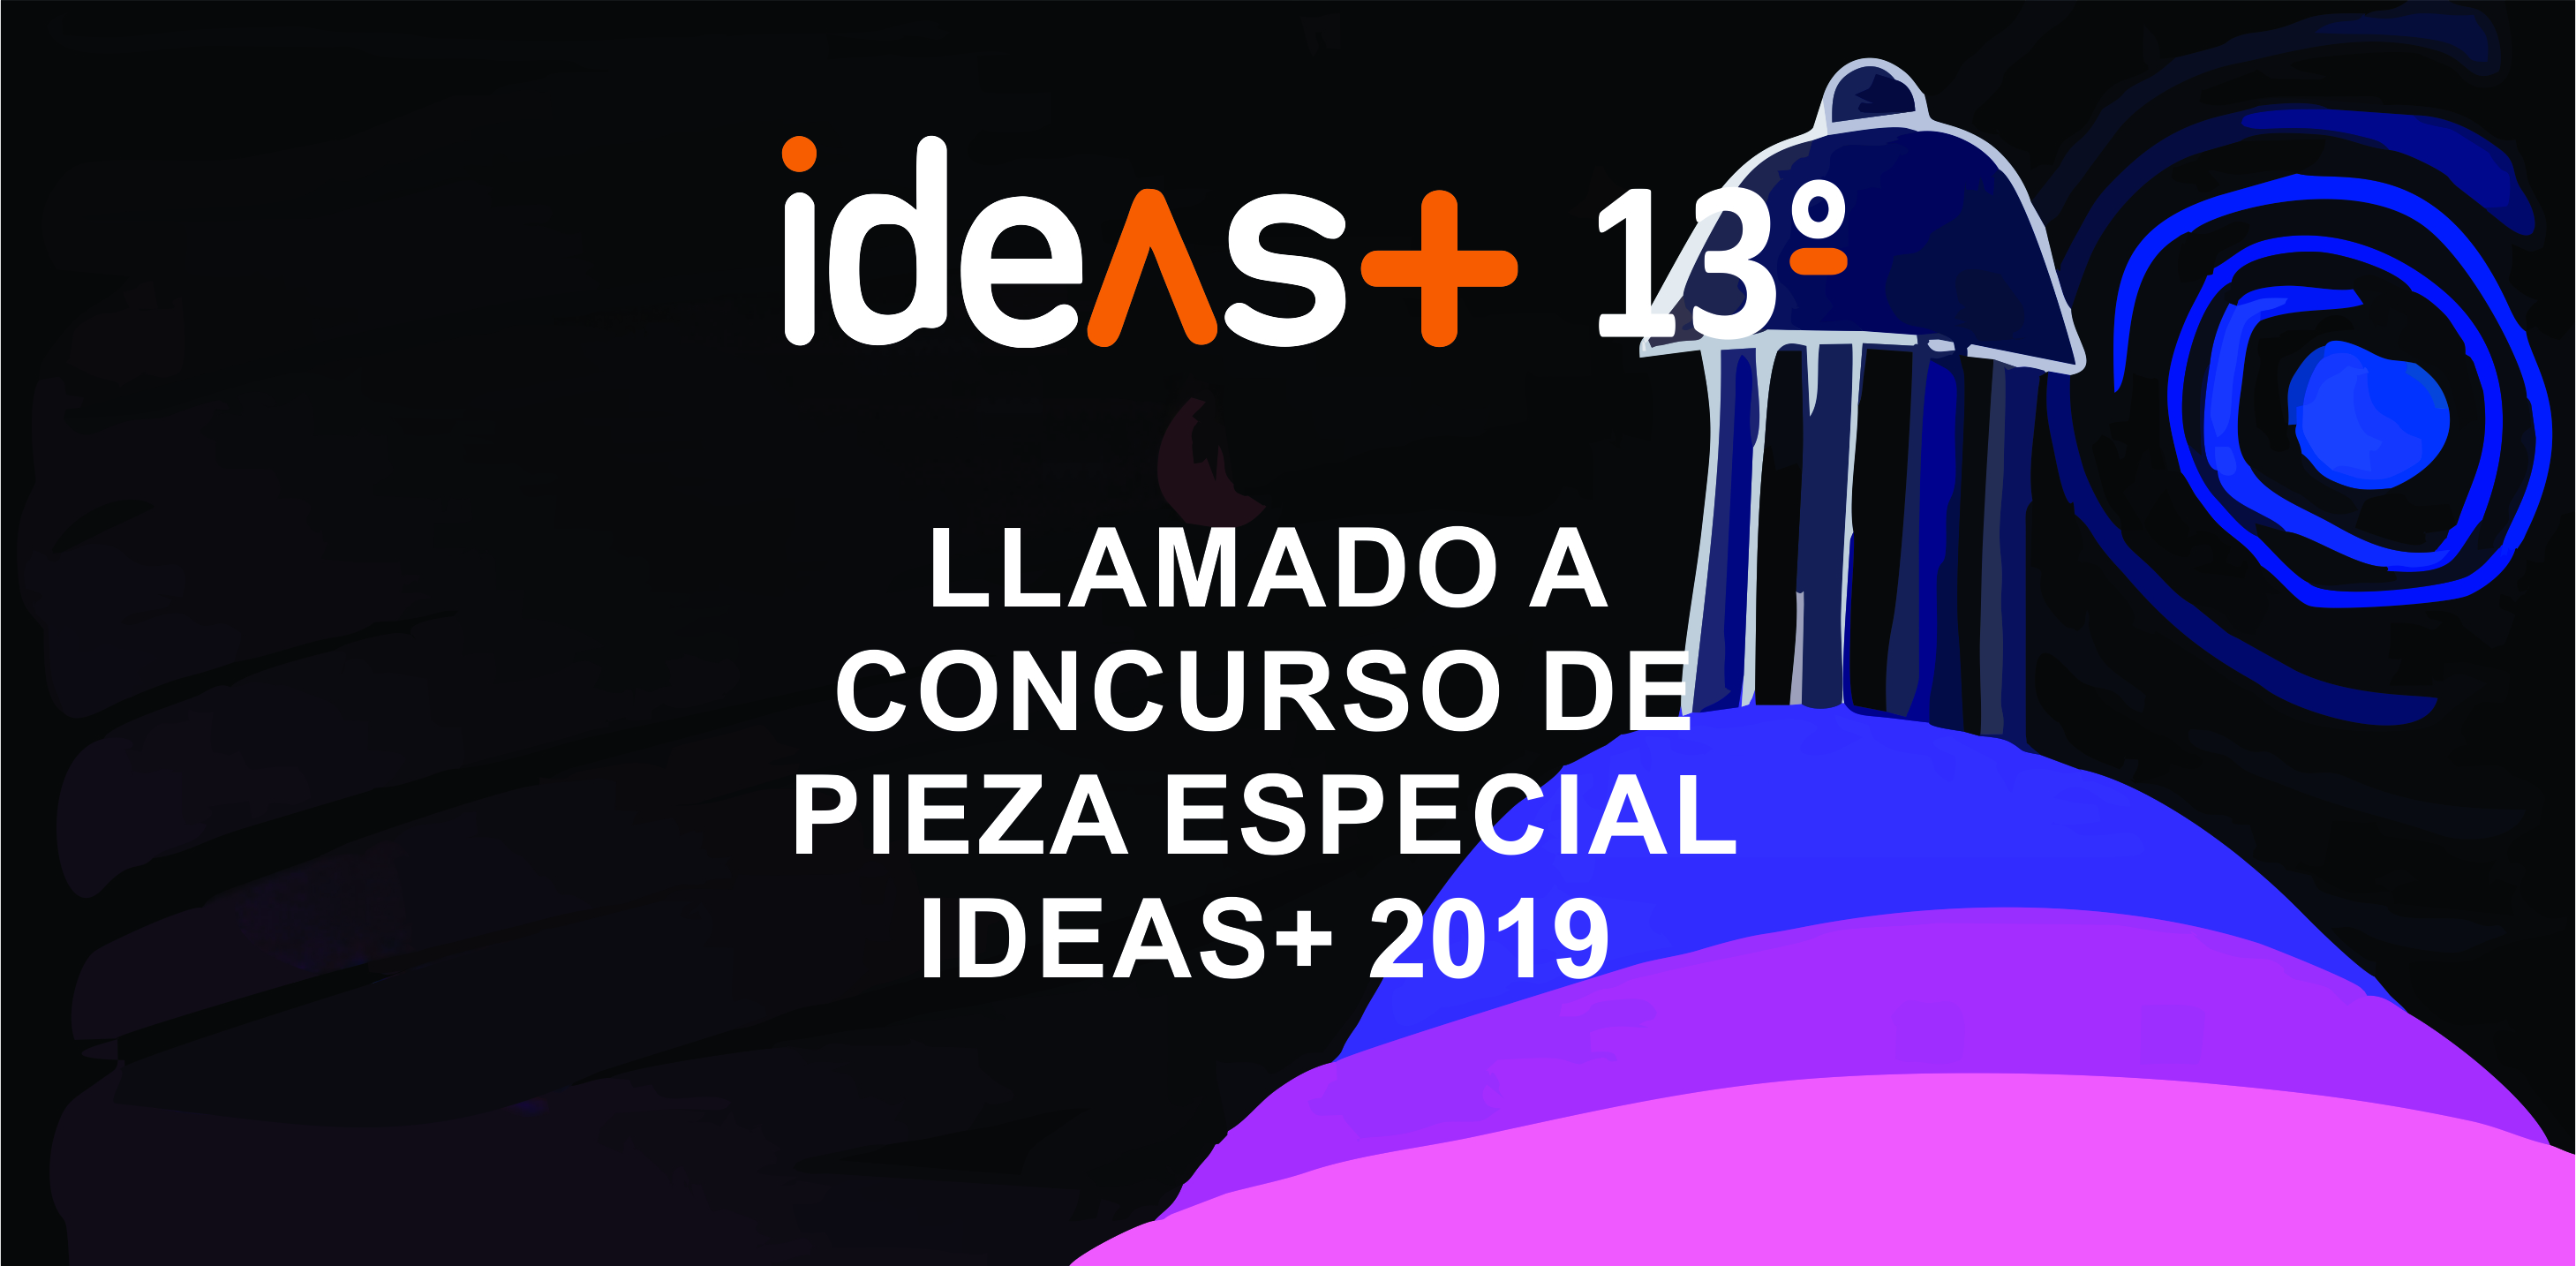 LLAMADO A CONCURSO DE PIEZA ESPECIAL    IDEAS+ 2019